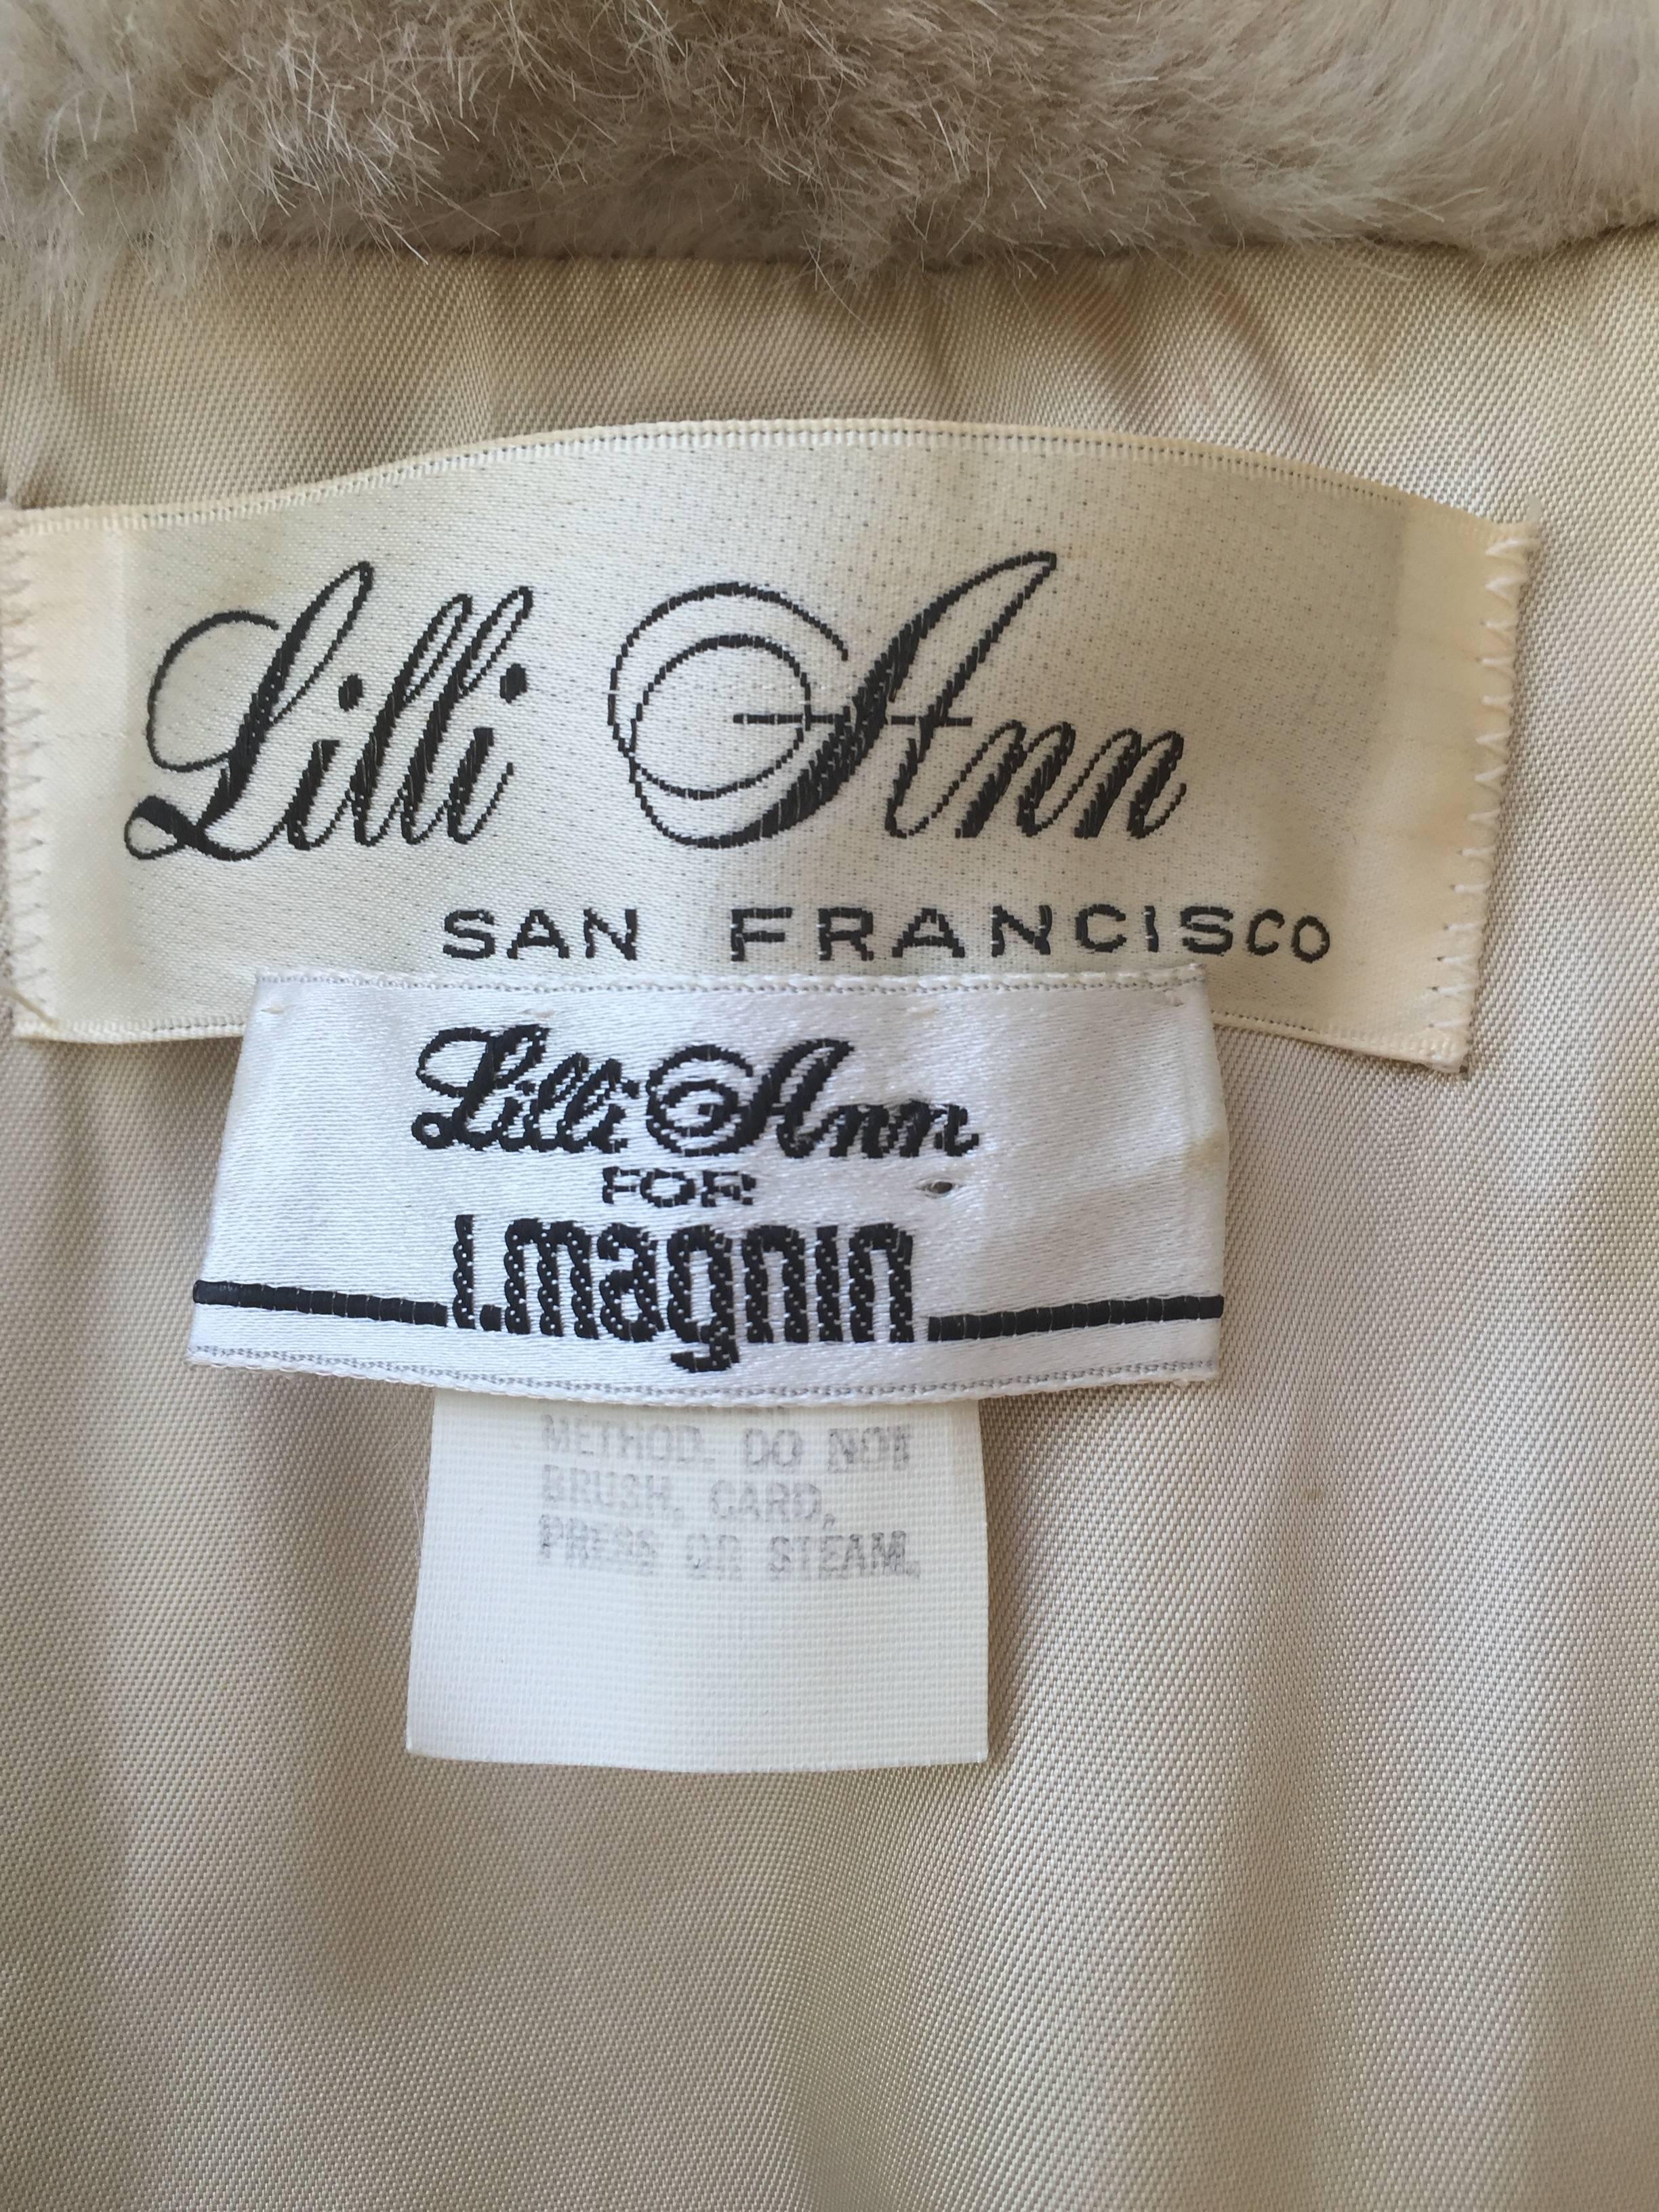 Incredible Vintage Lilli Ann 1960s Faux Fur Blonde Tan 60s Swing Jacket ...